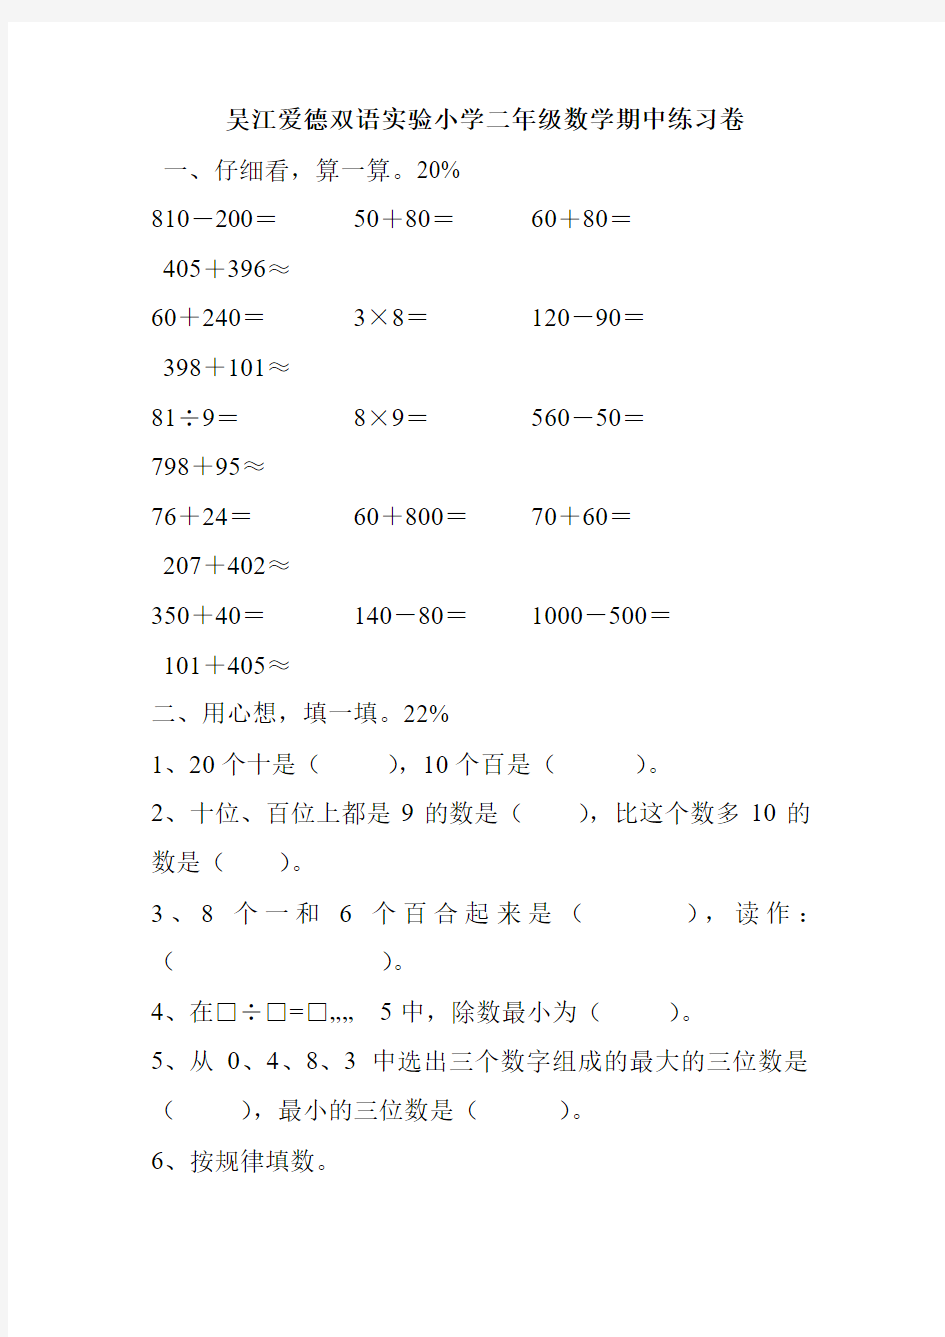 吴江爱德双语实验小学二年级数学期中练习卷